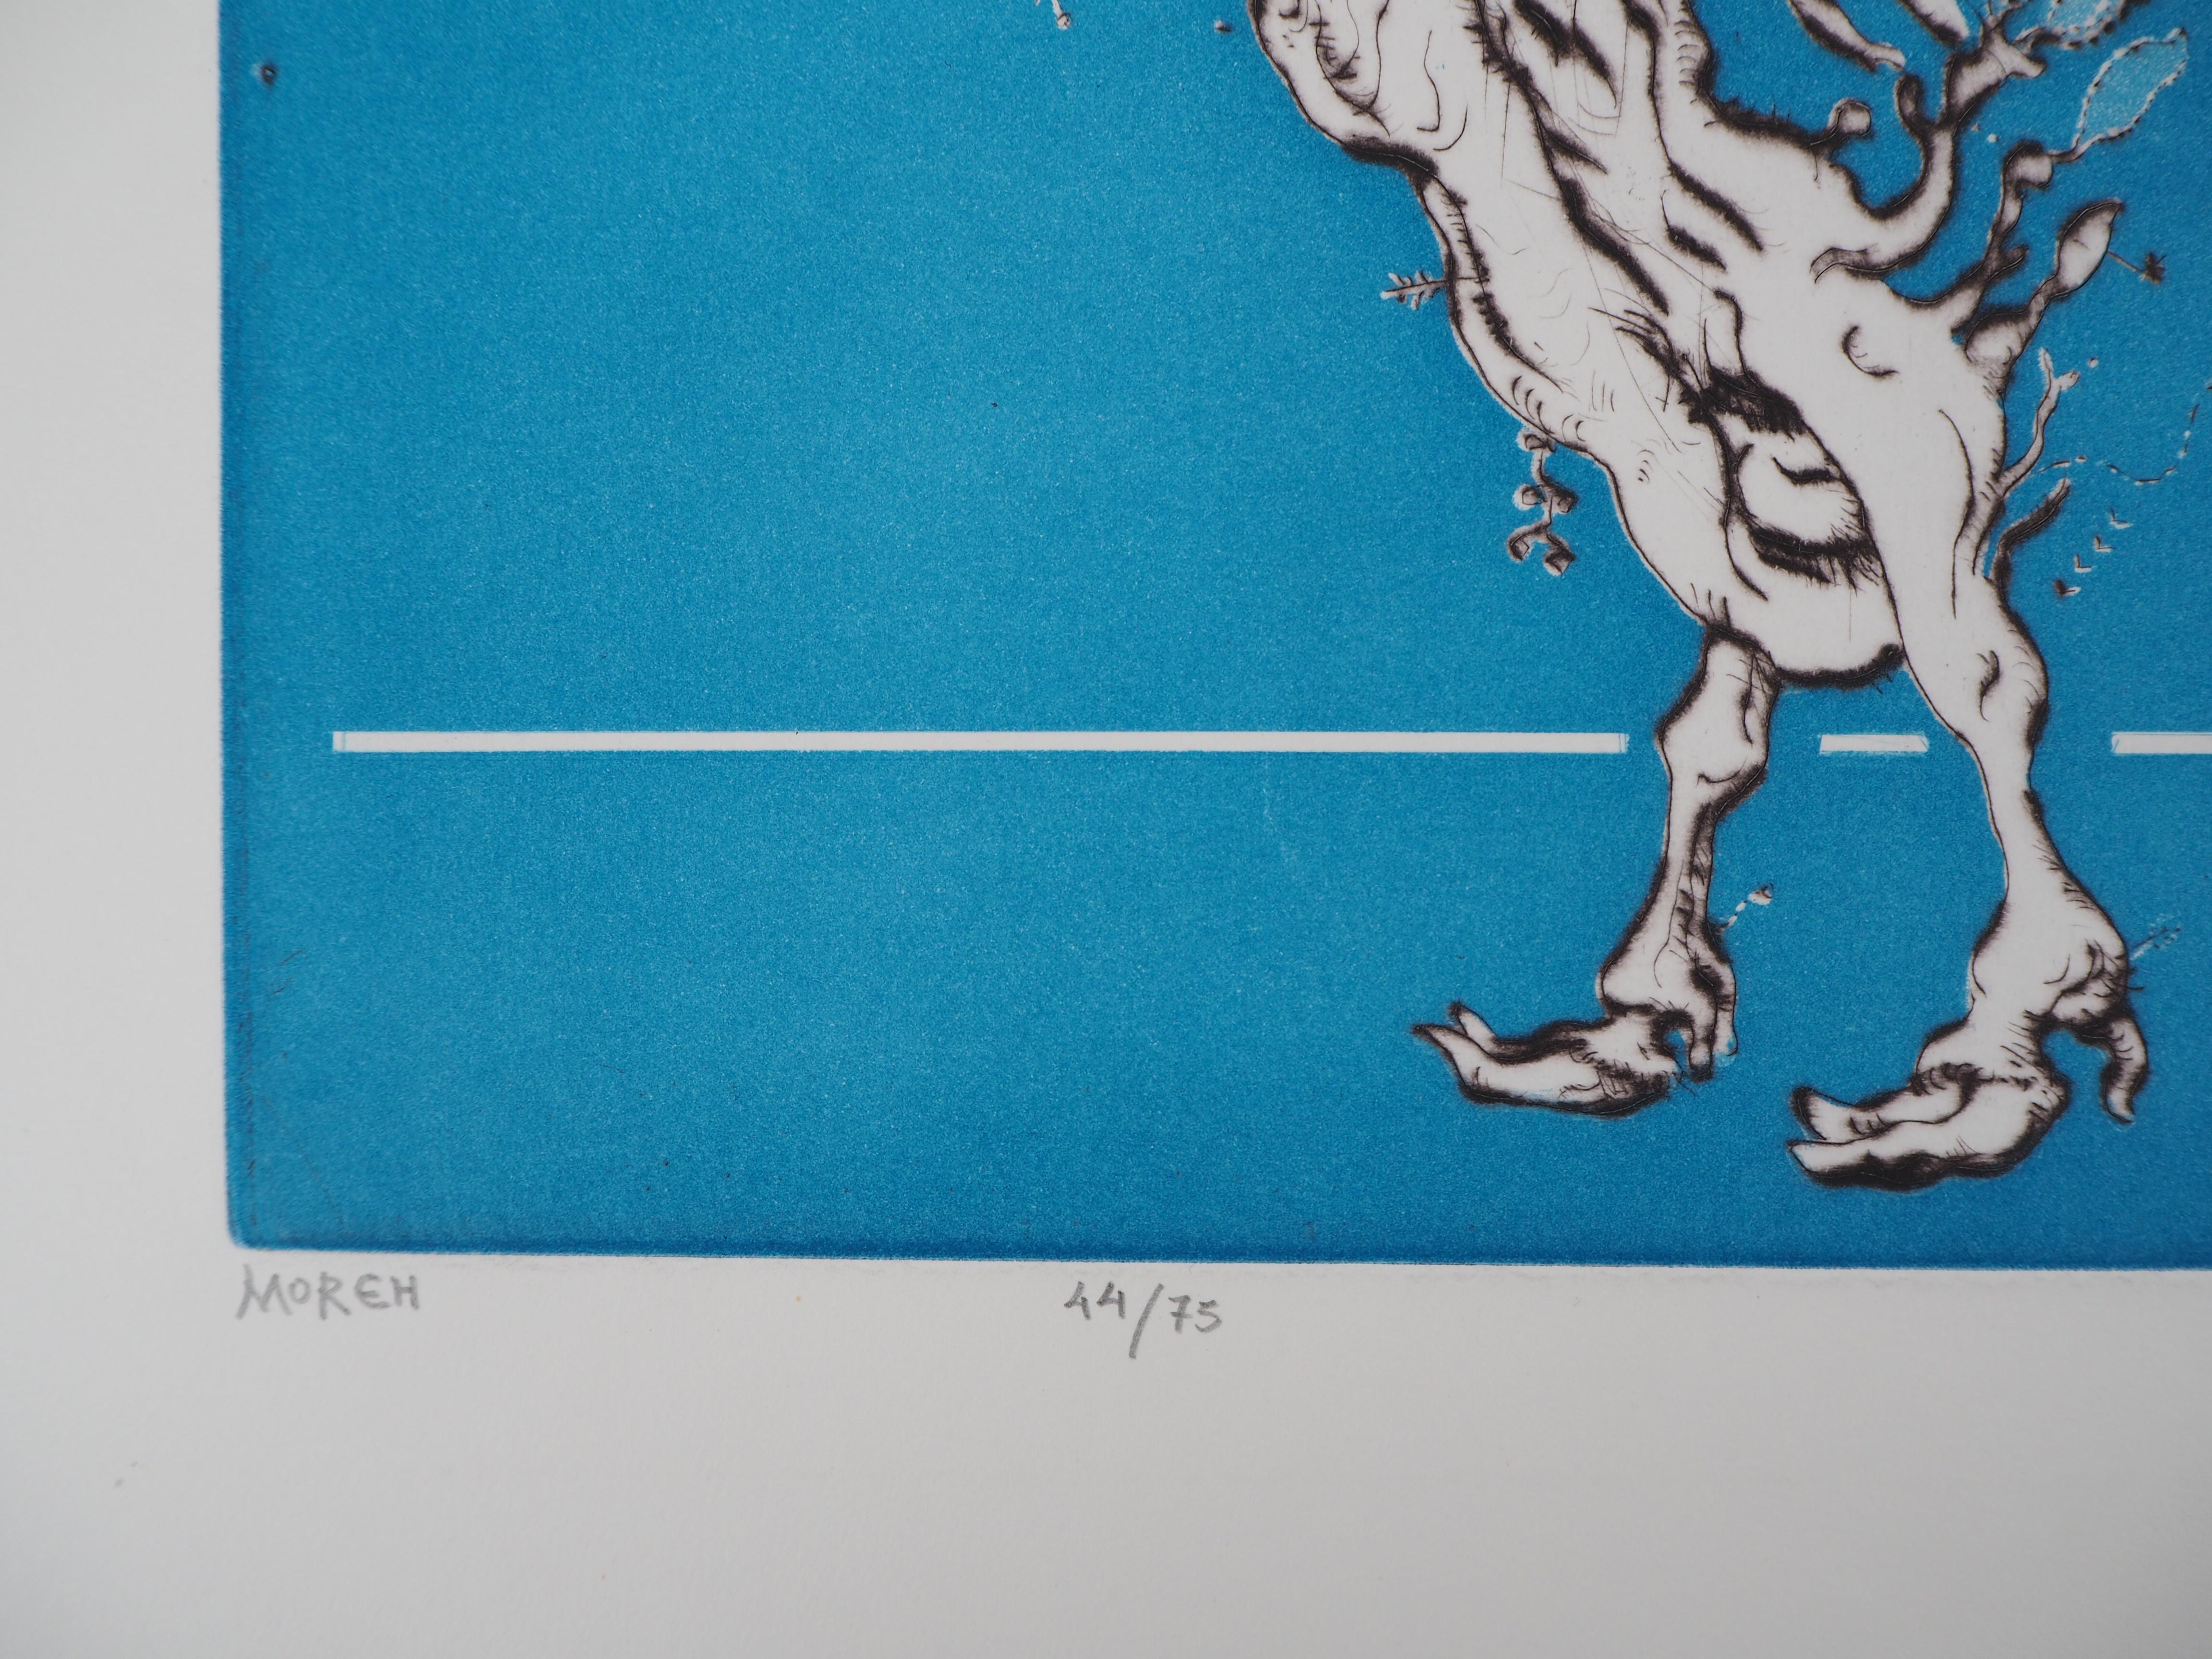 Mordecaï Moreh (1937-)
Die pflanzliche Kuh

Original Radierung und Aquatinta
Handsigniert mit Bleistift
Nummeriert / 75 Exemplare 
Auf Pergament BFK Rives 45 x 56 cm (ca. 17,7 x 22 inch)

Ausgezeichneter Zustand